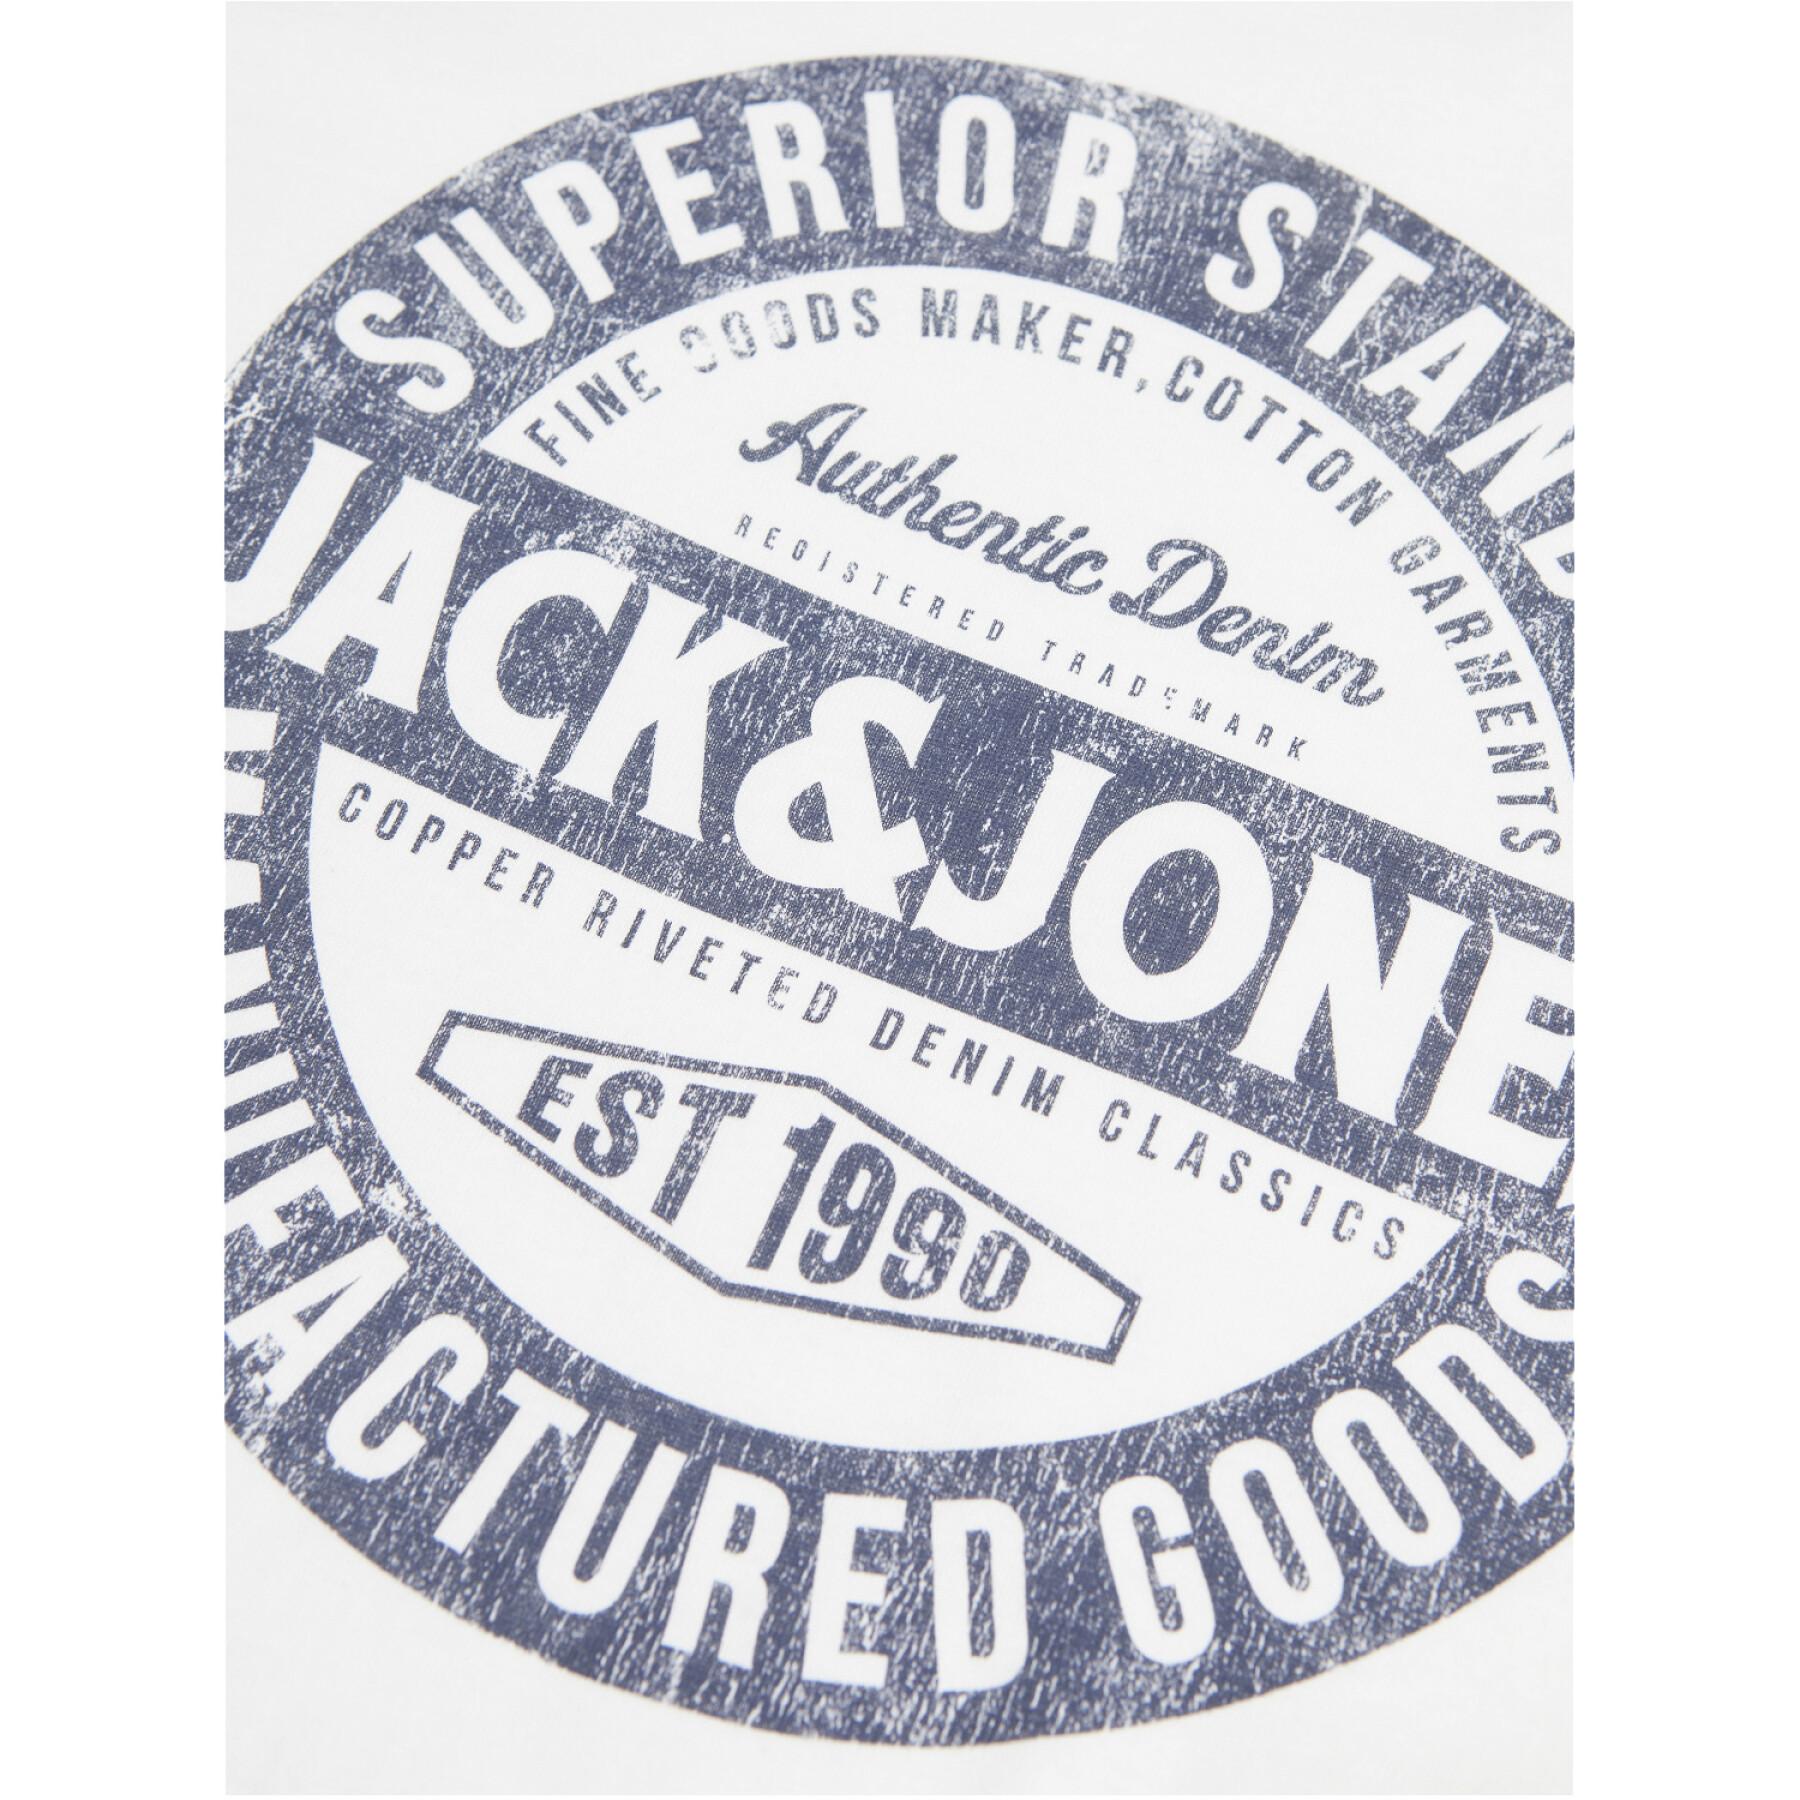 T-shirt bambino a maniche lunghe con scollo rotondo Jack & Jones Jeans